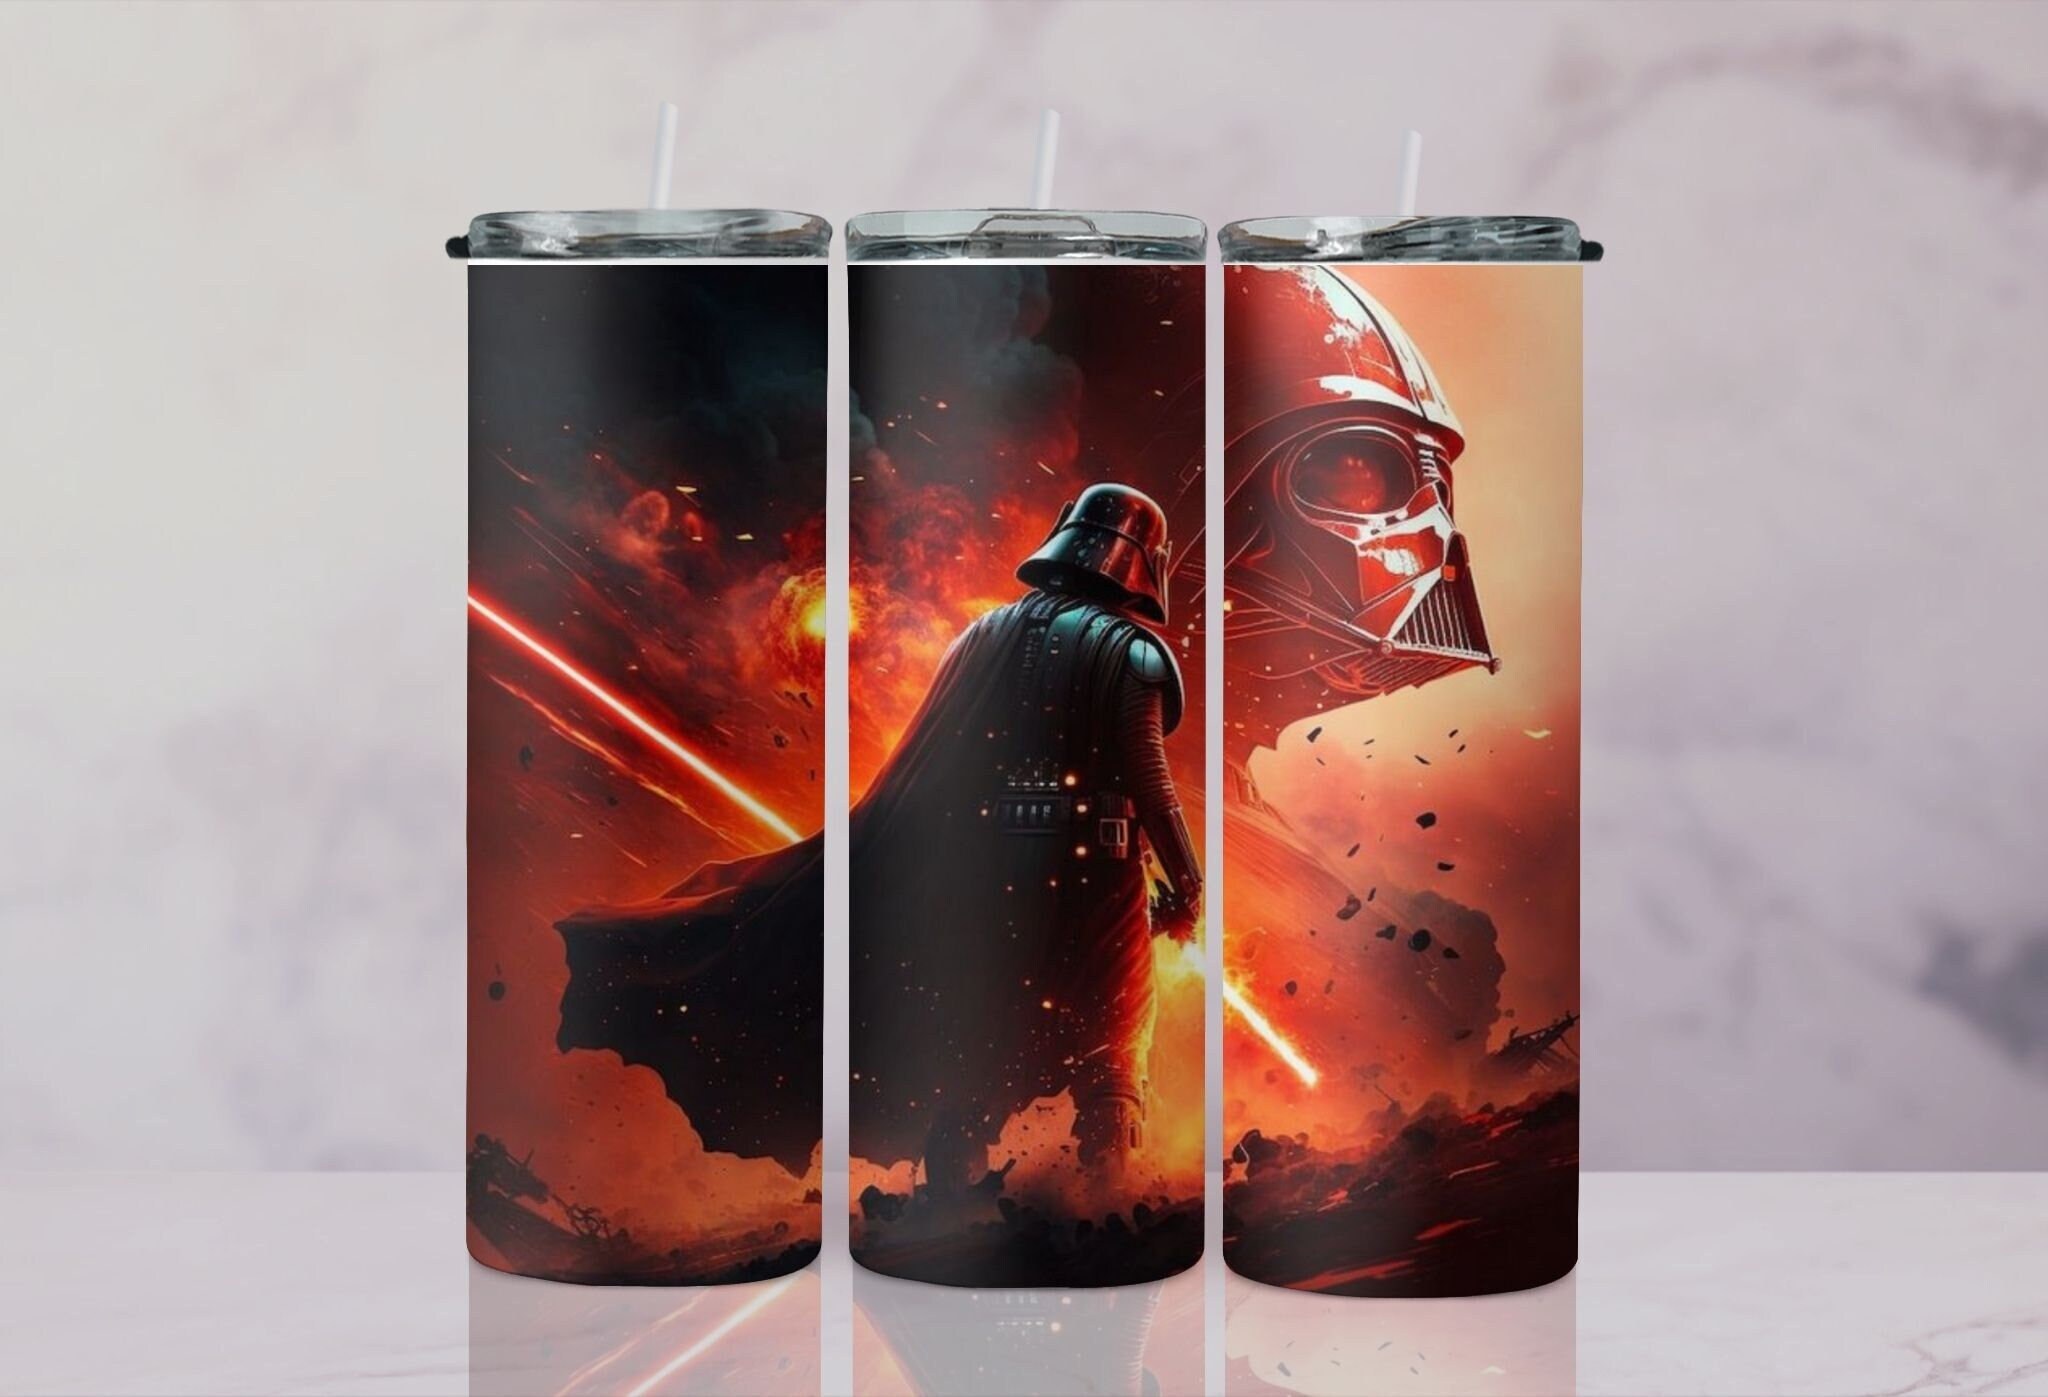 Star Wars Darth Vader Merry Sithmas 20oz Coffee Mug Christmas